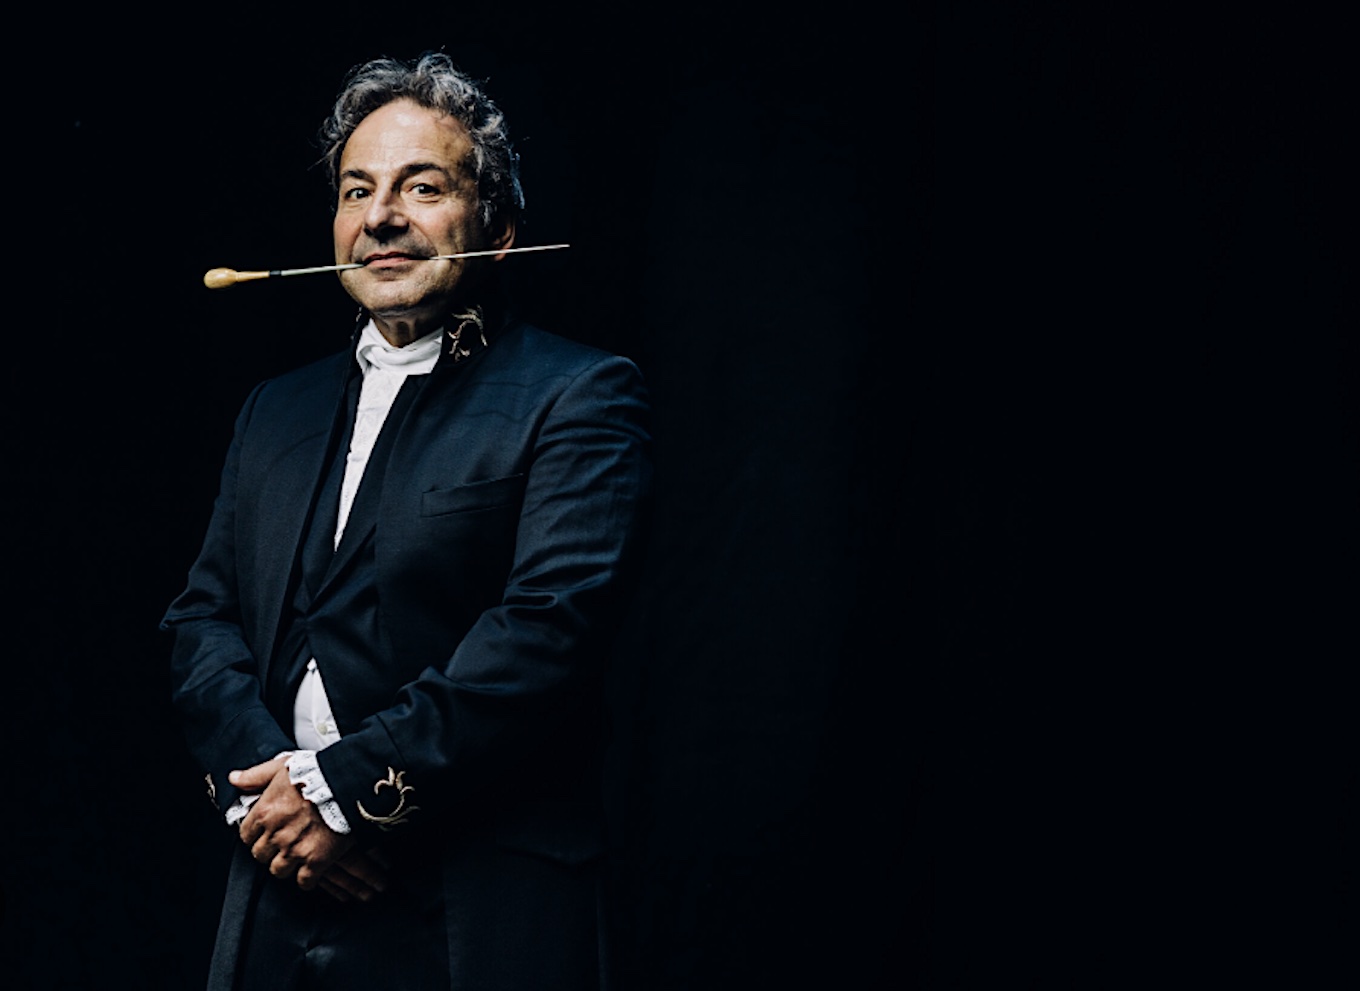 Koningsdagconcert met Maestro Jules - Amsterdam